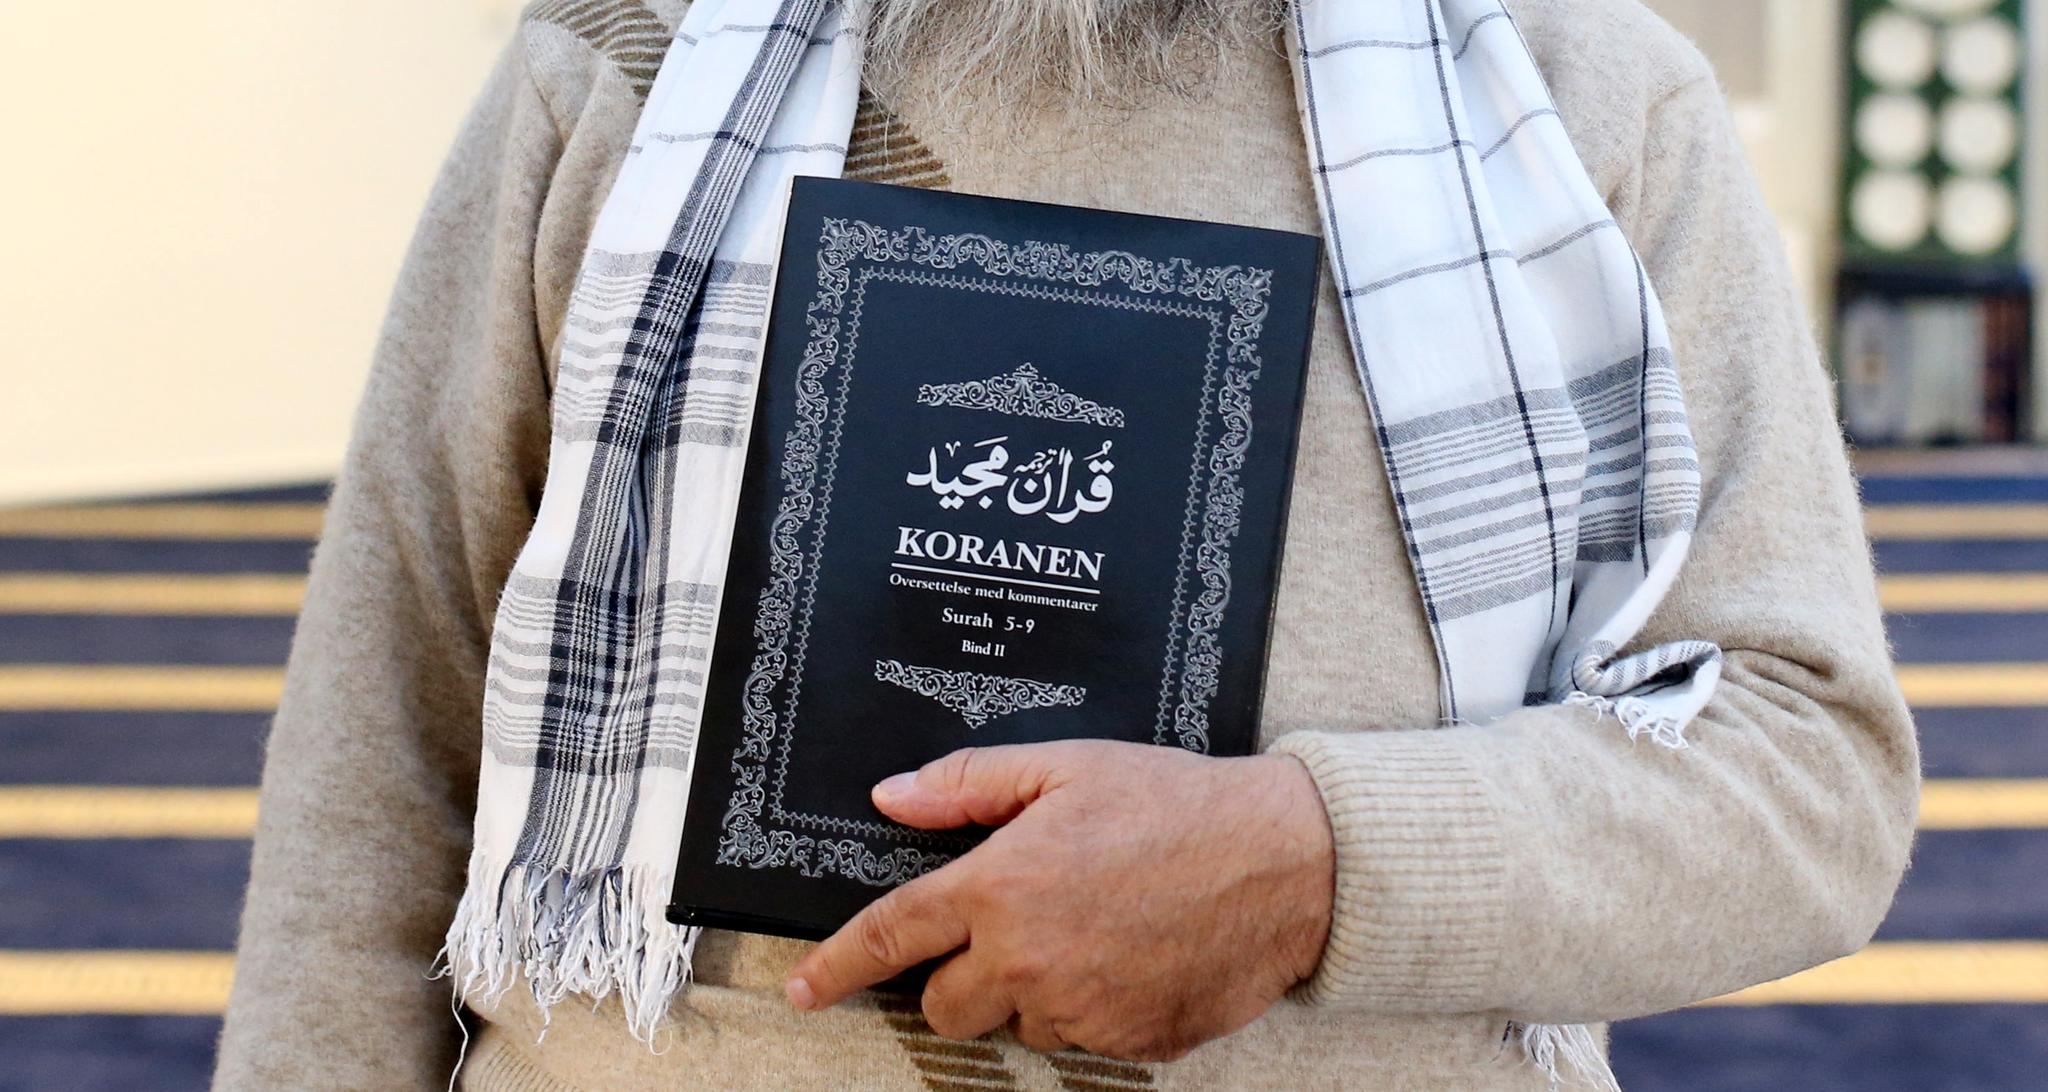 Det ironiske er at retten til å krige i islam utelukkende ble gitt for å beskytte ytrings- og religionsfriheten, skriver Osamah Rajpoot. Bildet viser muslimenes hellige bok, Koranen.